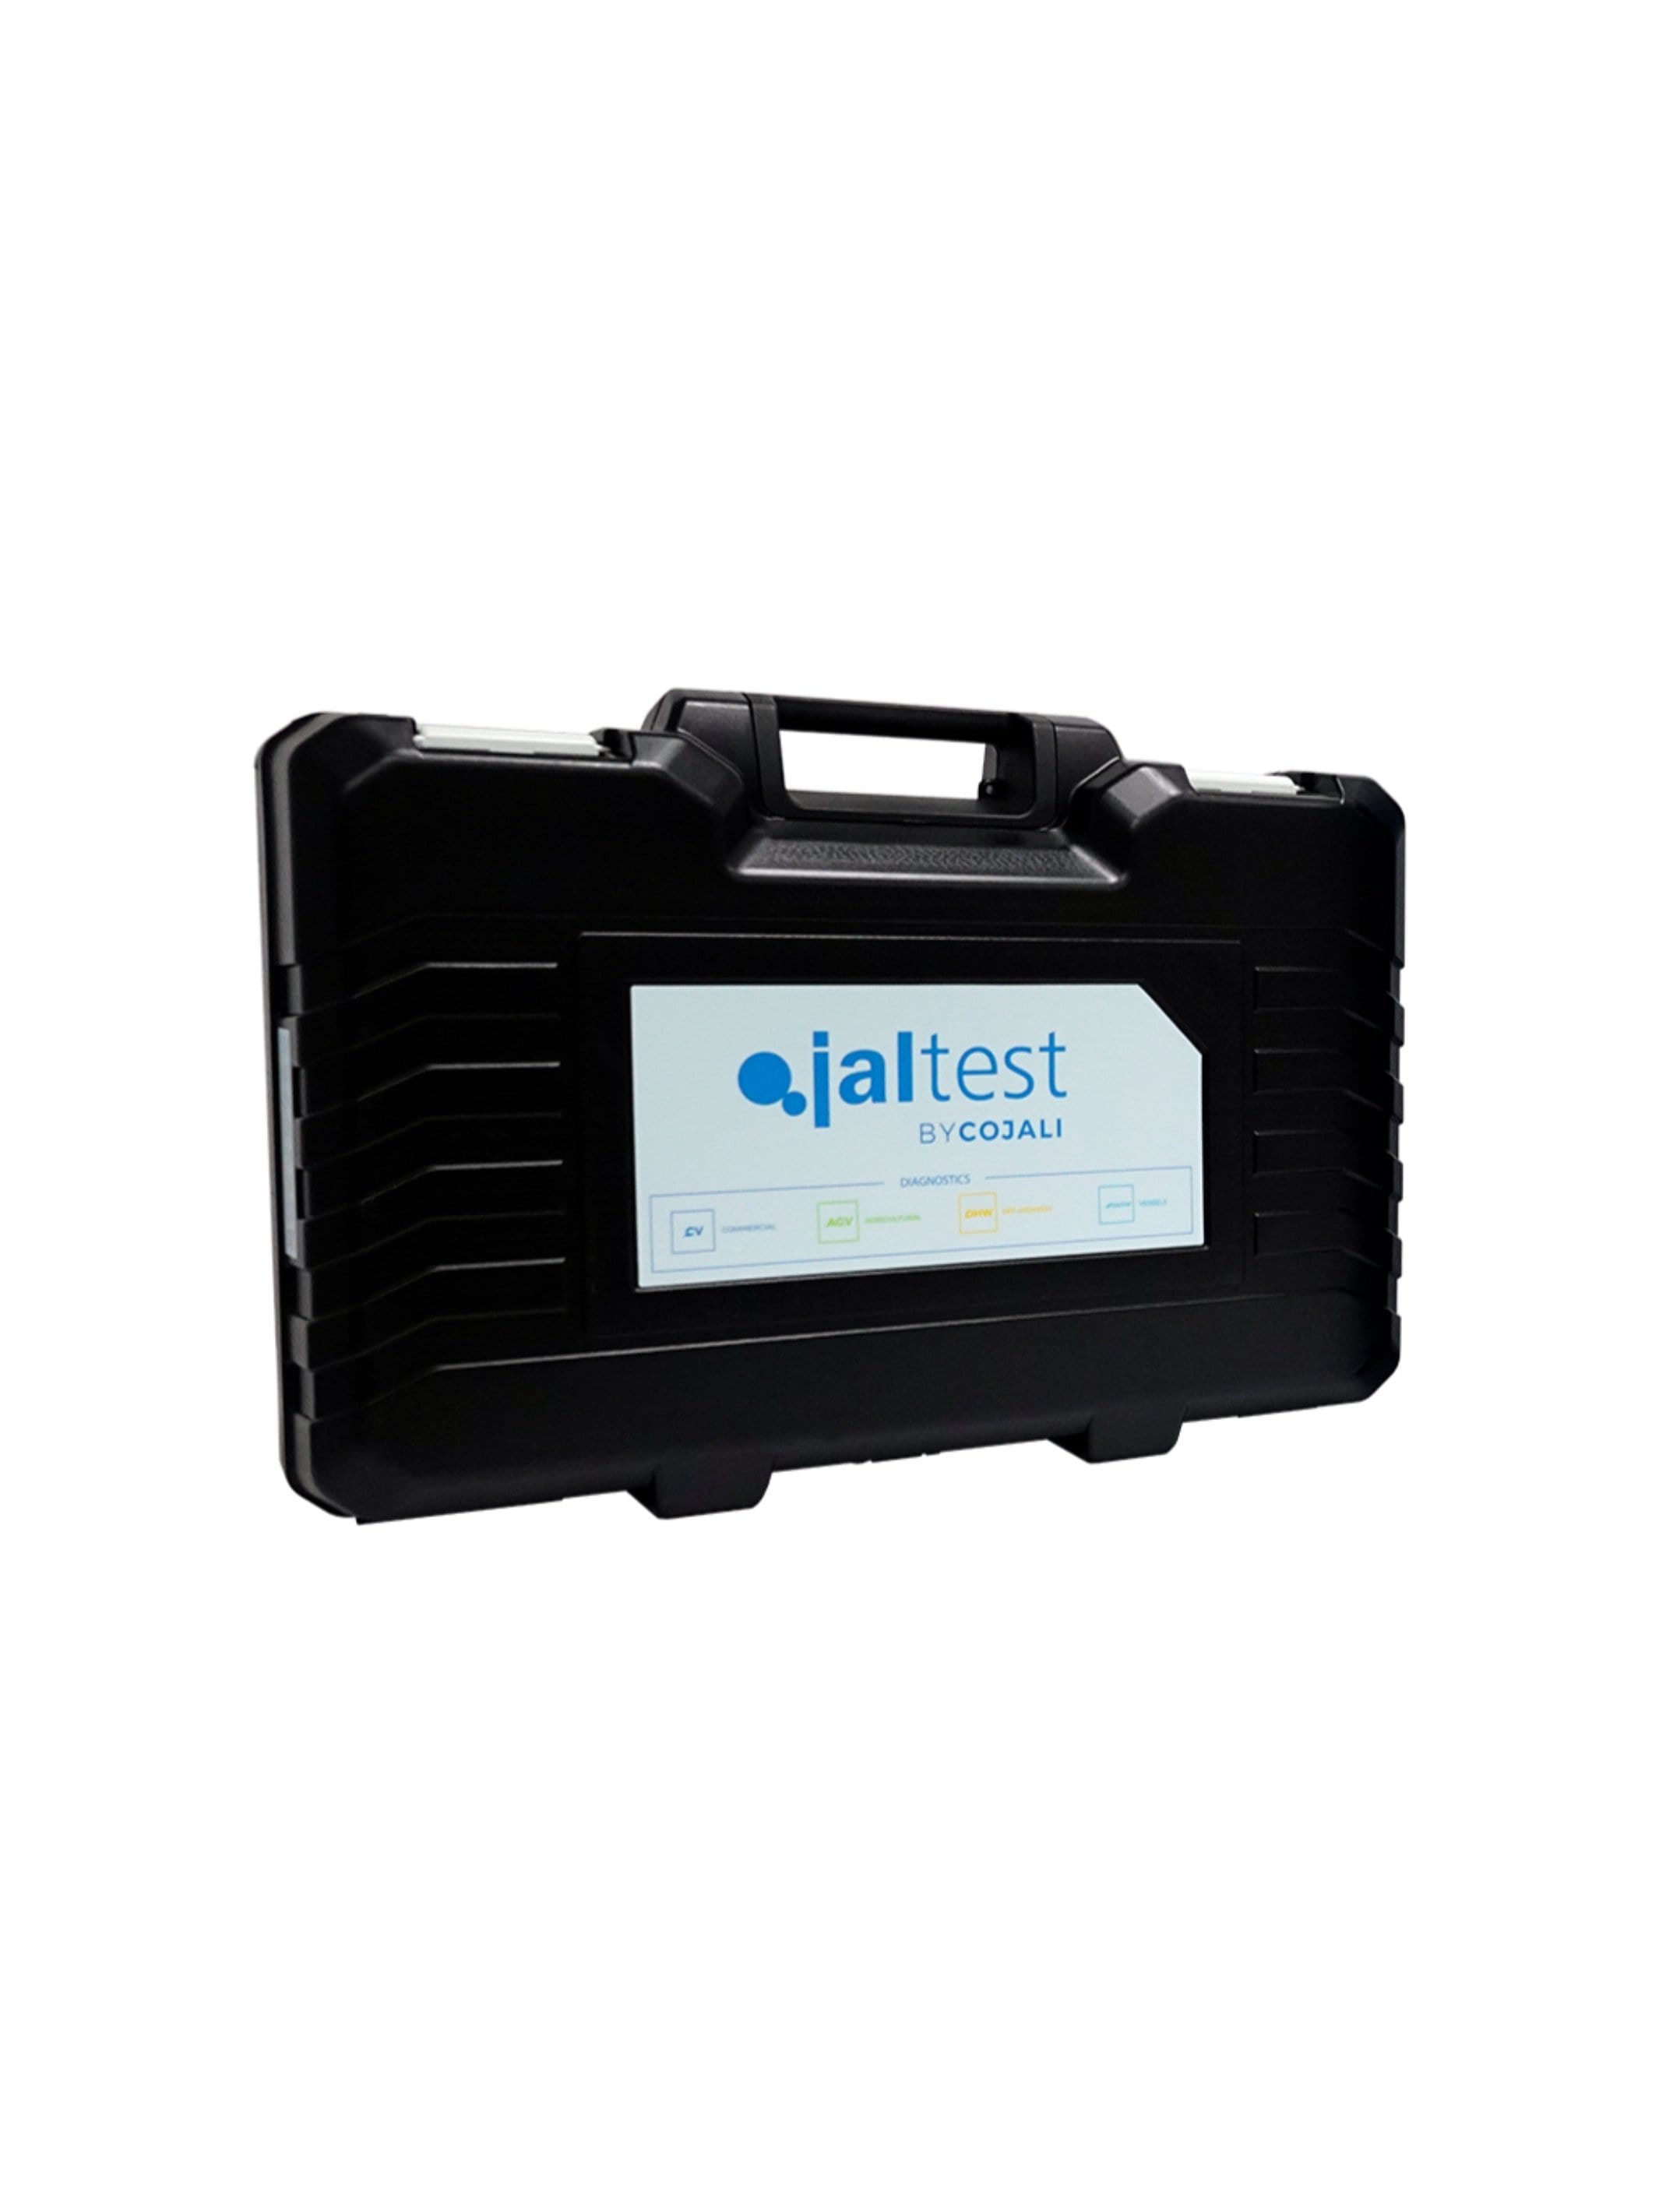 70003015 Cojali Jaltest Transport Hardcase - Jaltest Marine Diagnostic Tool Kit Inboard Engine